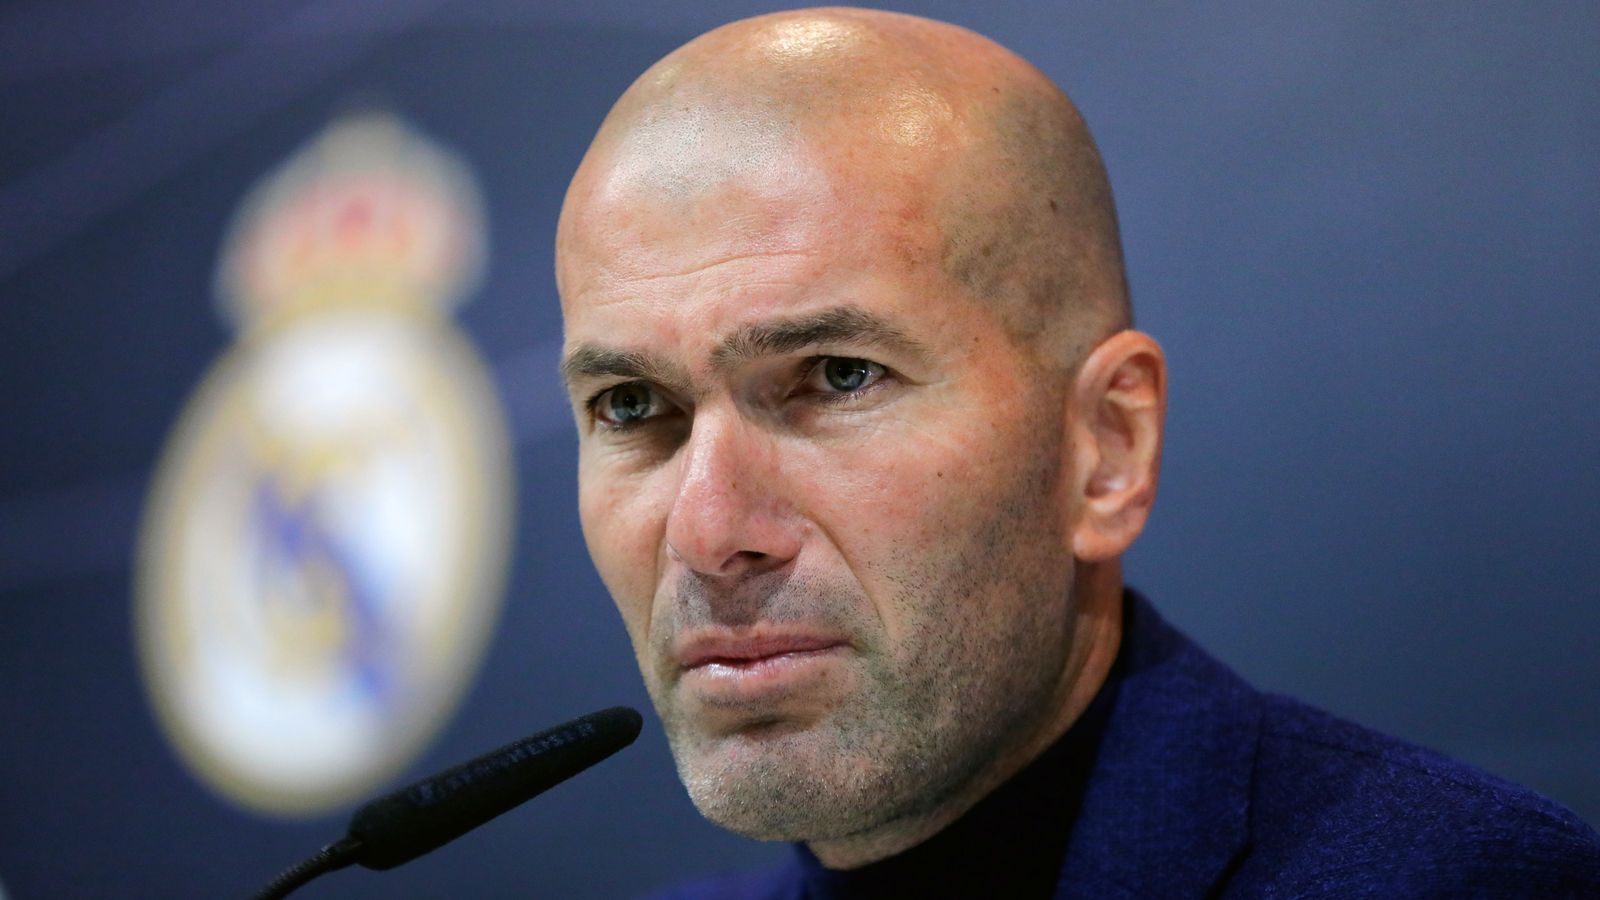 
                <strong>Zinedine Zidane</strong><br>
                Als vermeintlich logischer Mourinho-Nachfolger gilt schon seit mehreren Monaten Zinedine Zidane. Der Franzose zog sich im Sommer 2018 nach drei Champions-League-Siegen mit Real Madrid bei den Spaniern zurück und wartet seitdem auf eine neue Herausforderung. Der 46-Jährige, früher selbst ein Weltklassespieler, zeigte in Madrid, dass er sich auch als noch unerfahrener Coach unter all den Weltstars behaupten und mit ihnen erfolgreich sein konnte. Noch im Oktober bekräftigte Zidane-Berater Alain Migliaccio bei "Journal du Dimanche" mit Bezug auf schon damals aufgekommene United-Gerüchte, dass "Zizou" sich bewusst eine einjährige Auszeit nehme und diese Entscheidung nicht zurücknehmen werde. Sollte der Franzose dies durchziehen, wäre er erst im Sommer 2019 ein Thema.
              